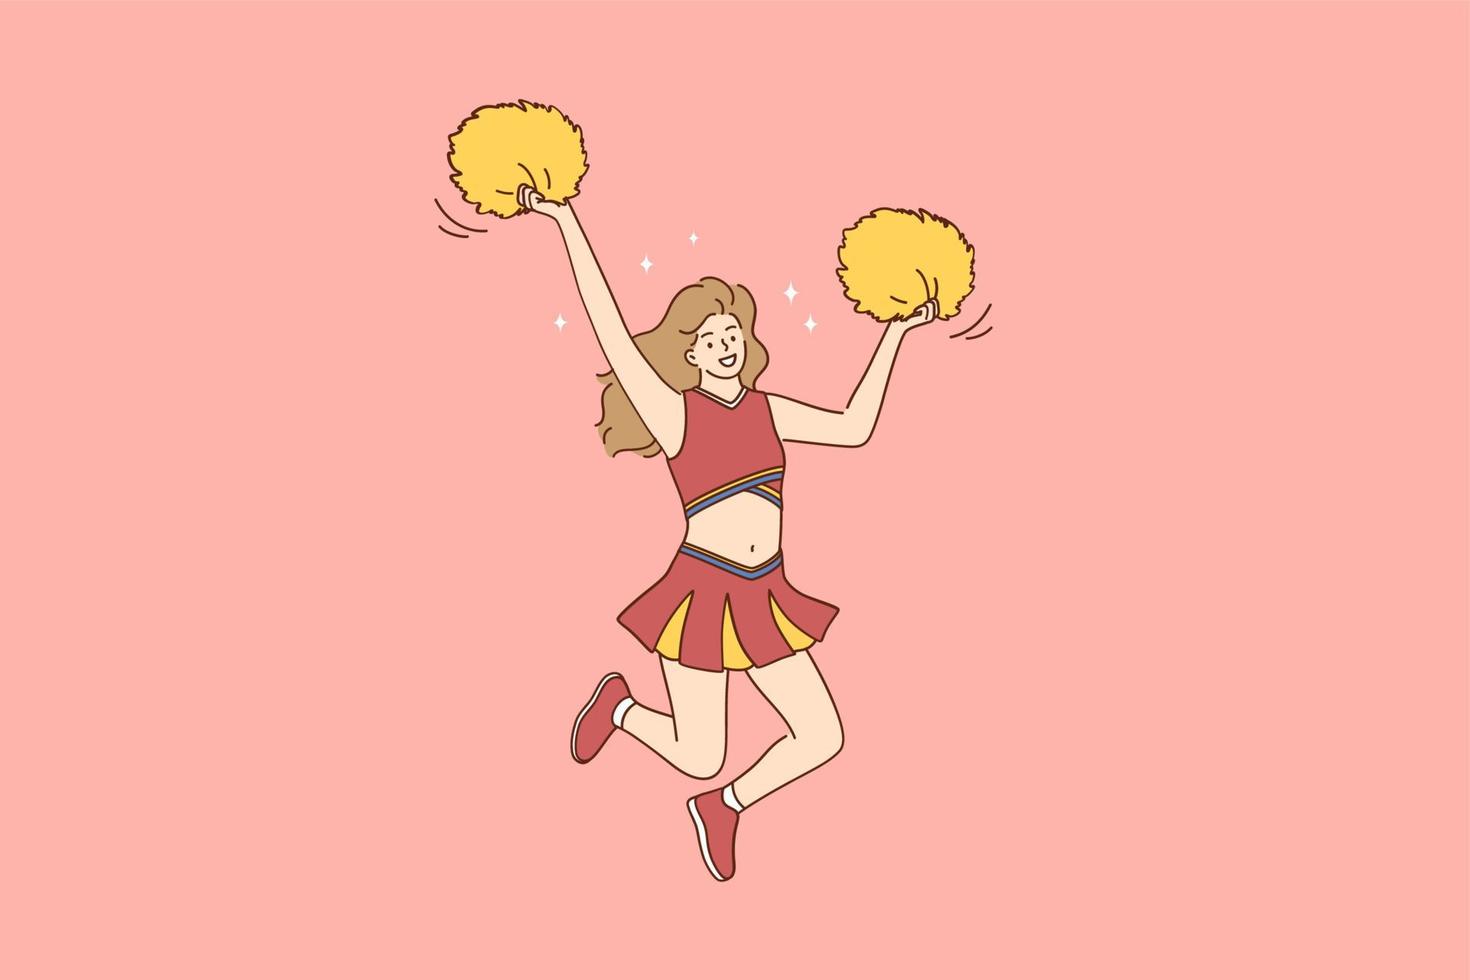 líder de torcida e conceito de esporte. jovem e linda garota sorridente líder de torcida em traje vermelho dançando movendo-se com pompons amarelos e pulando durante o show ilustração do vetor